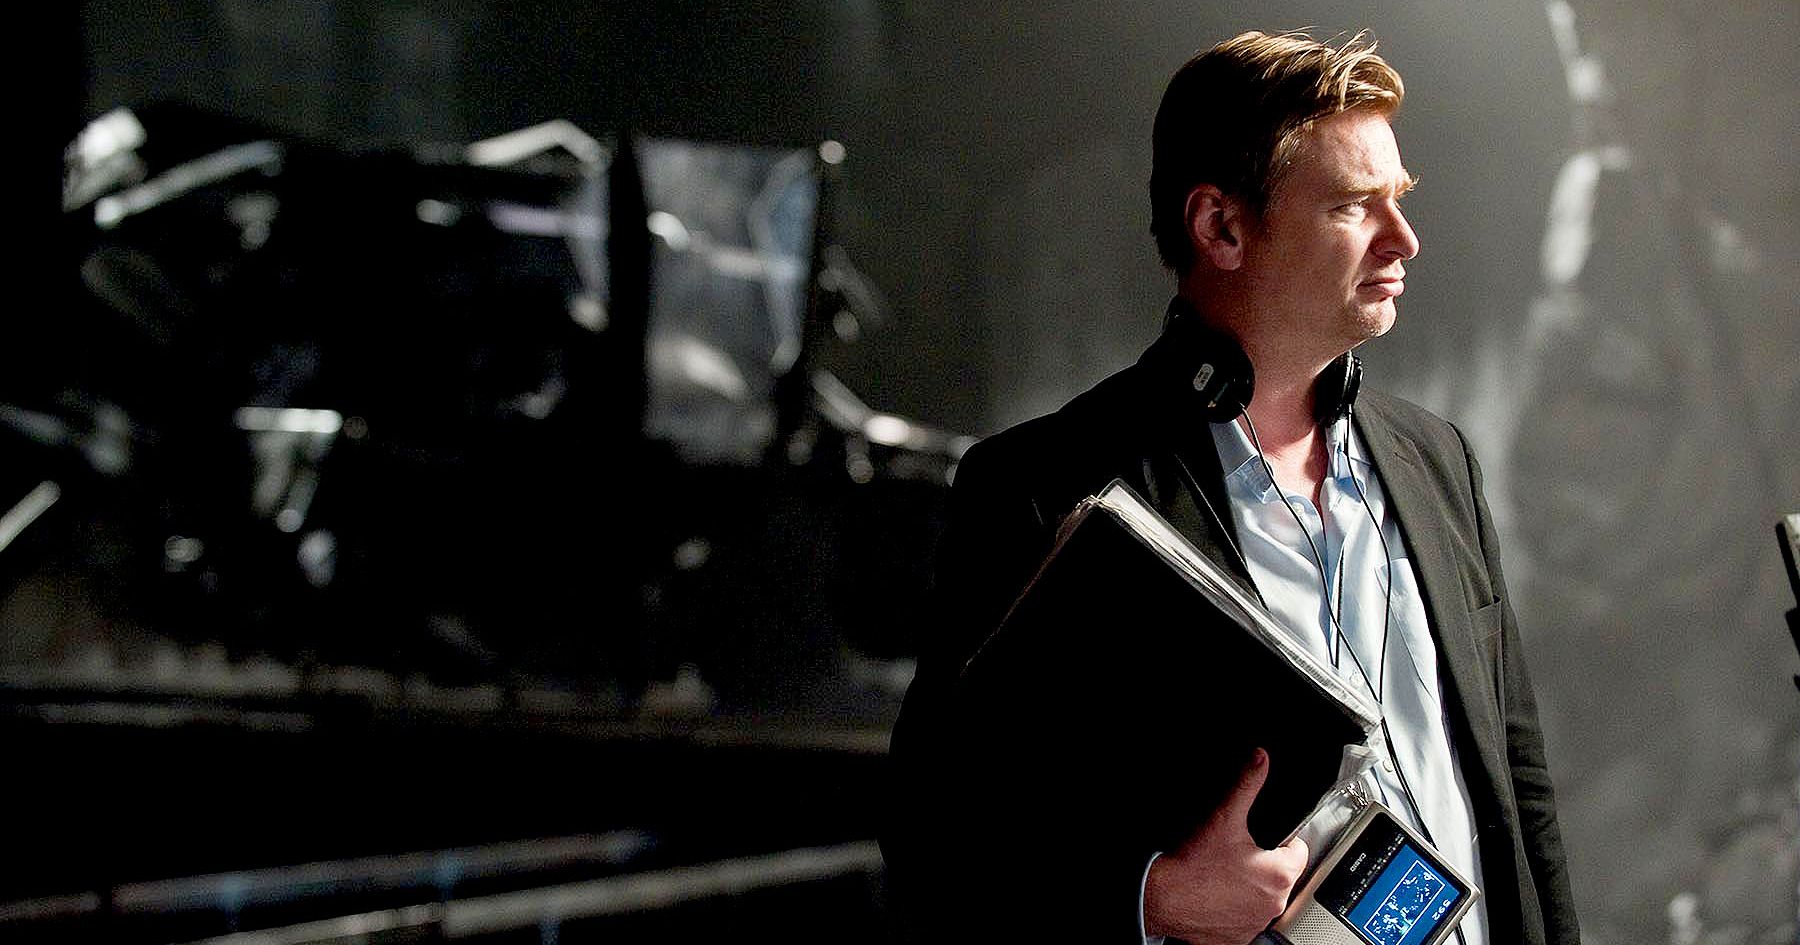 Christopher Nolan reveals some details on Interstellar